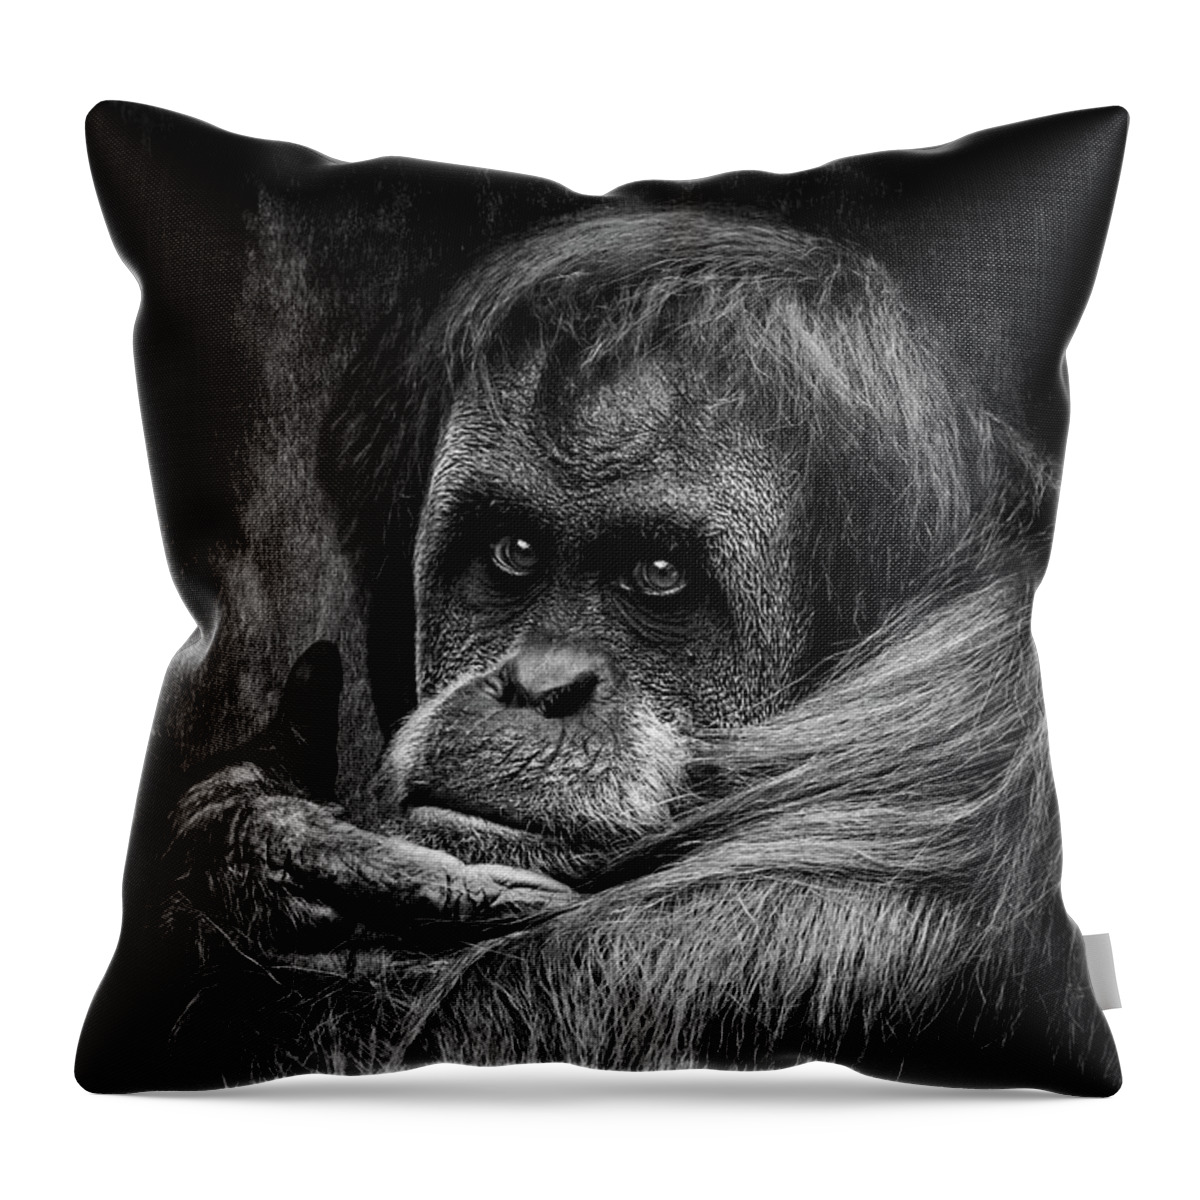 Orangutan Throw Pillow featuring the photograph Sumatran Orangutan by Adrian Evans